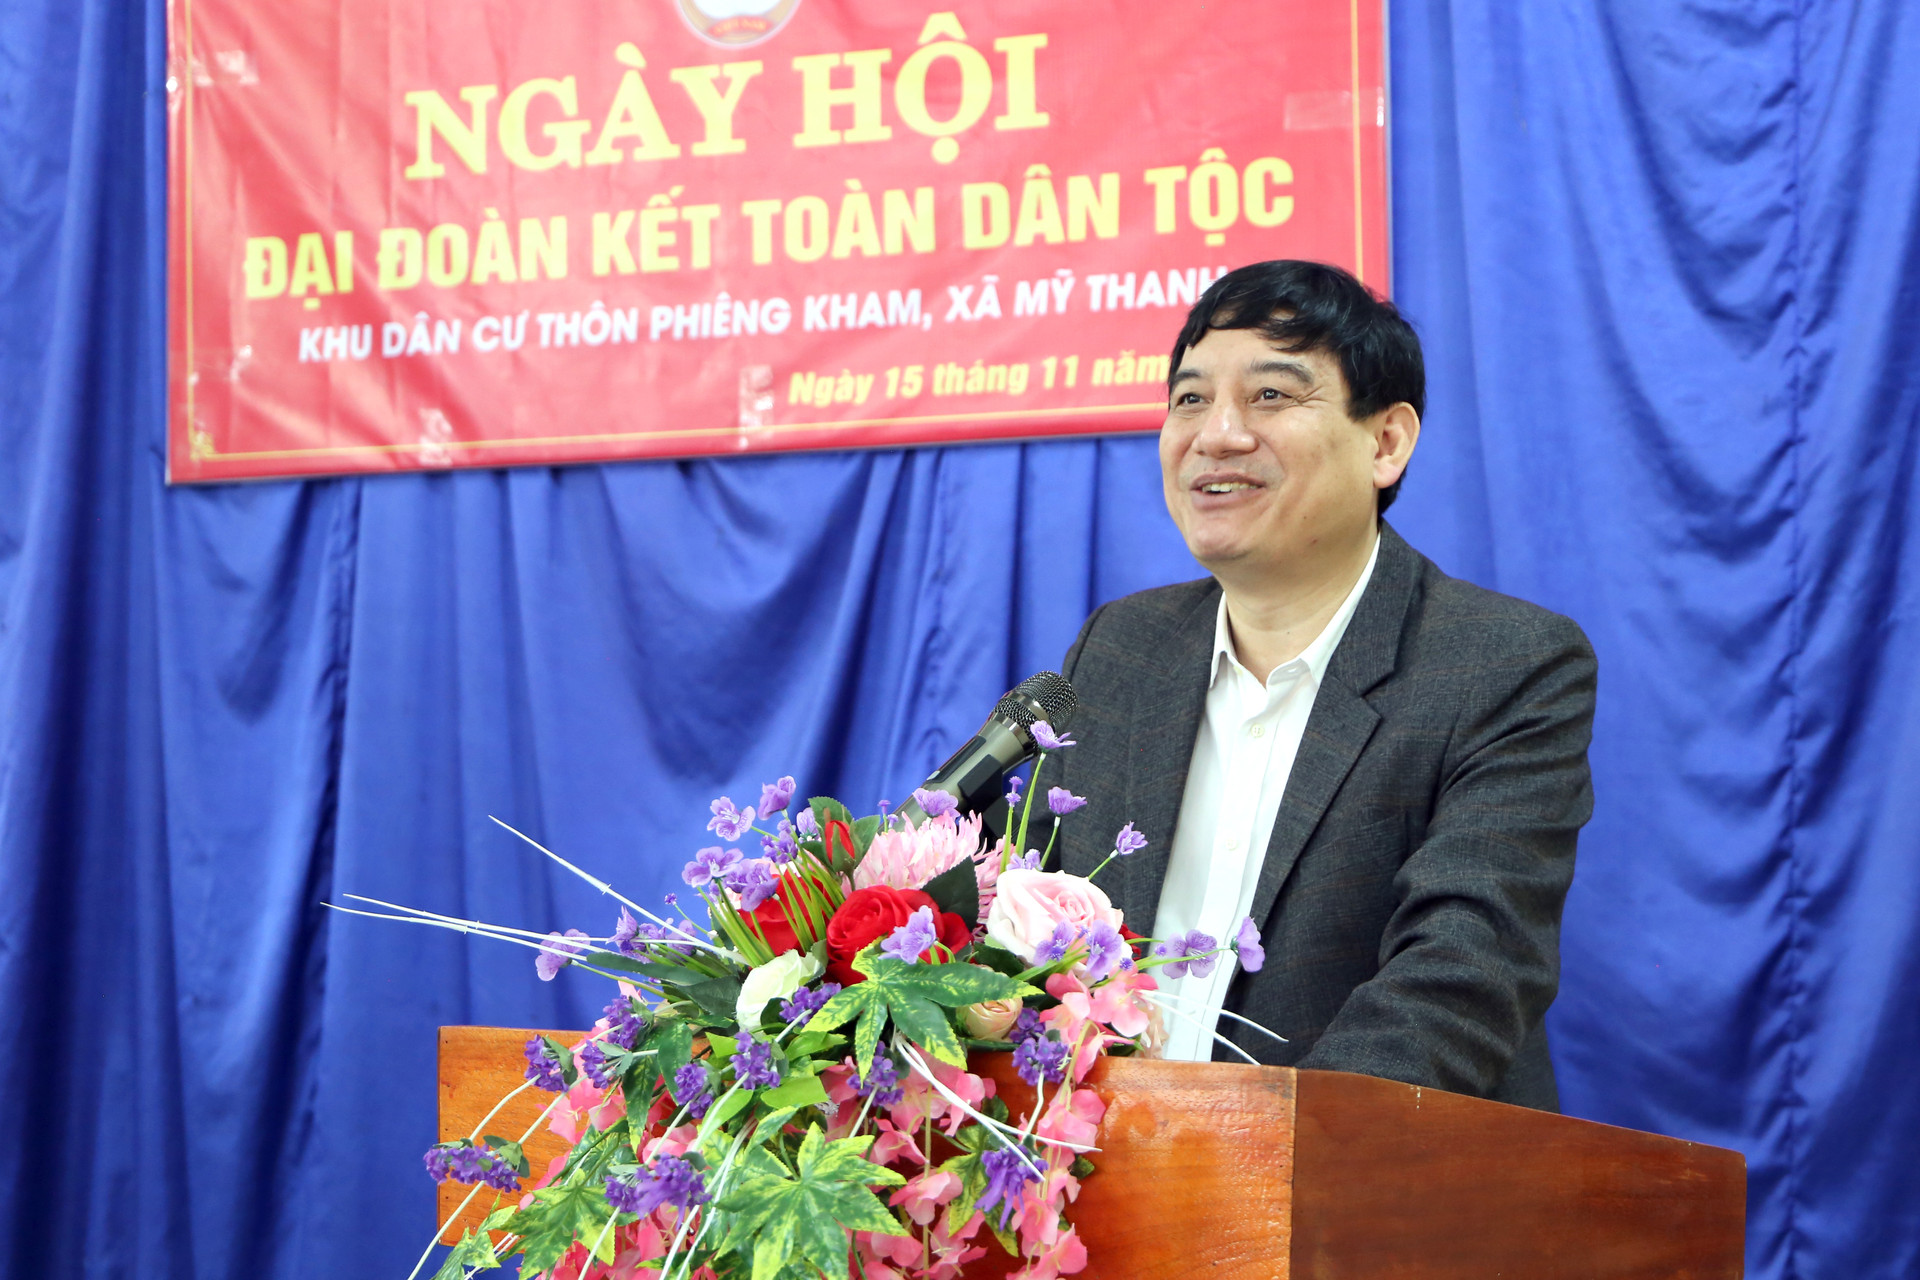 Ông NGuyễn Đắc Vinh phát biểu với bà con trong ngày hội.